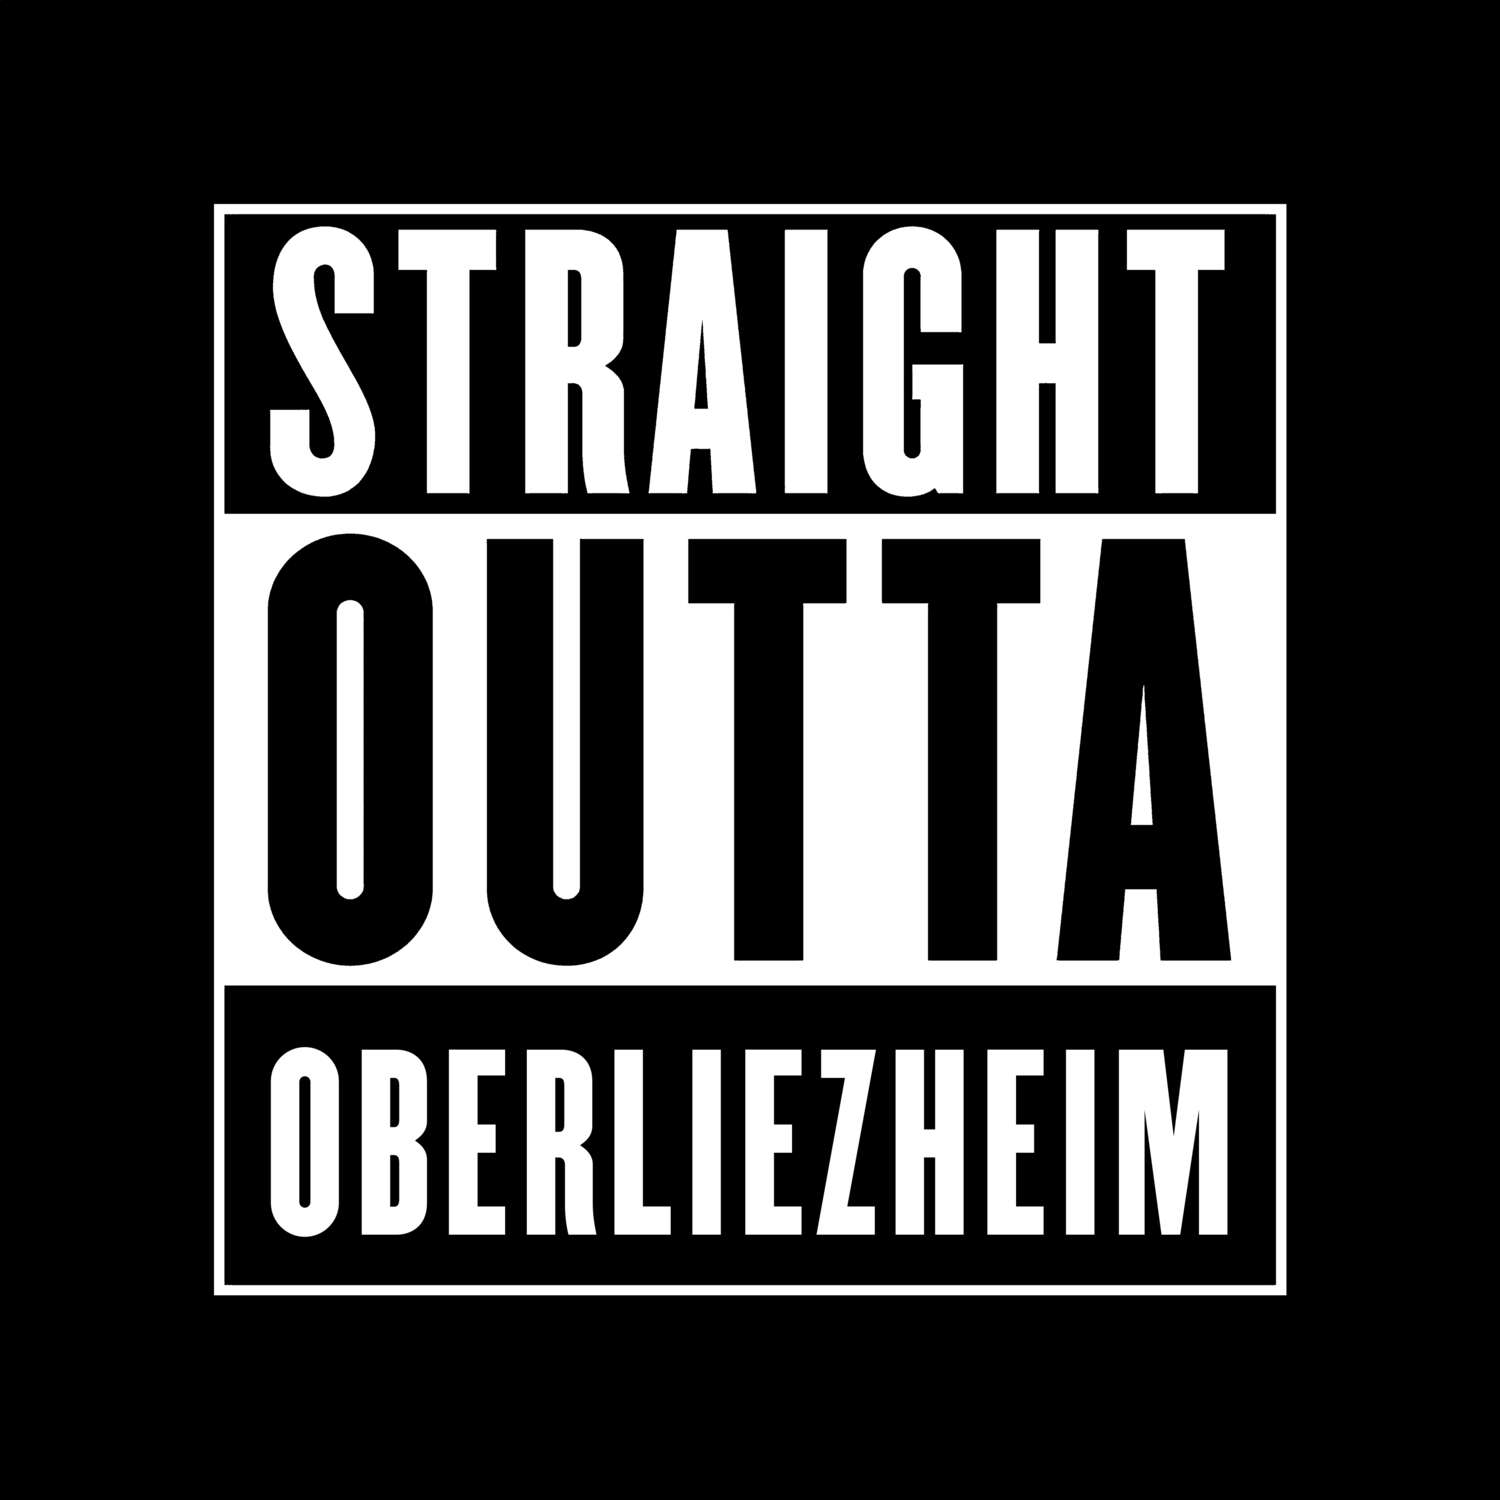 Oberliezheim T-Shirt »Straight Outta«